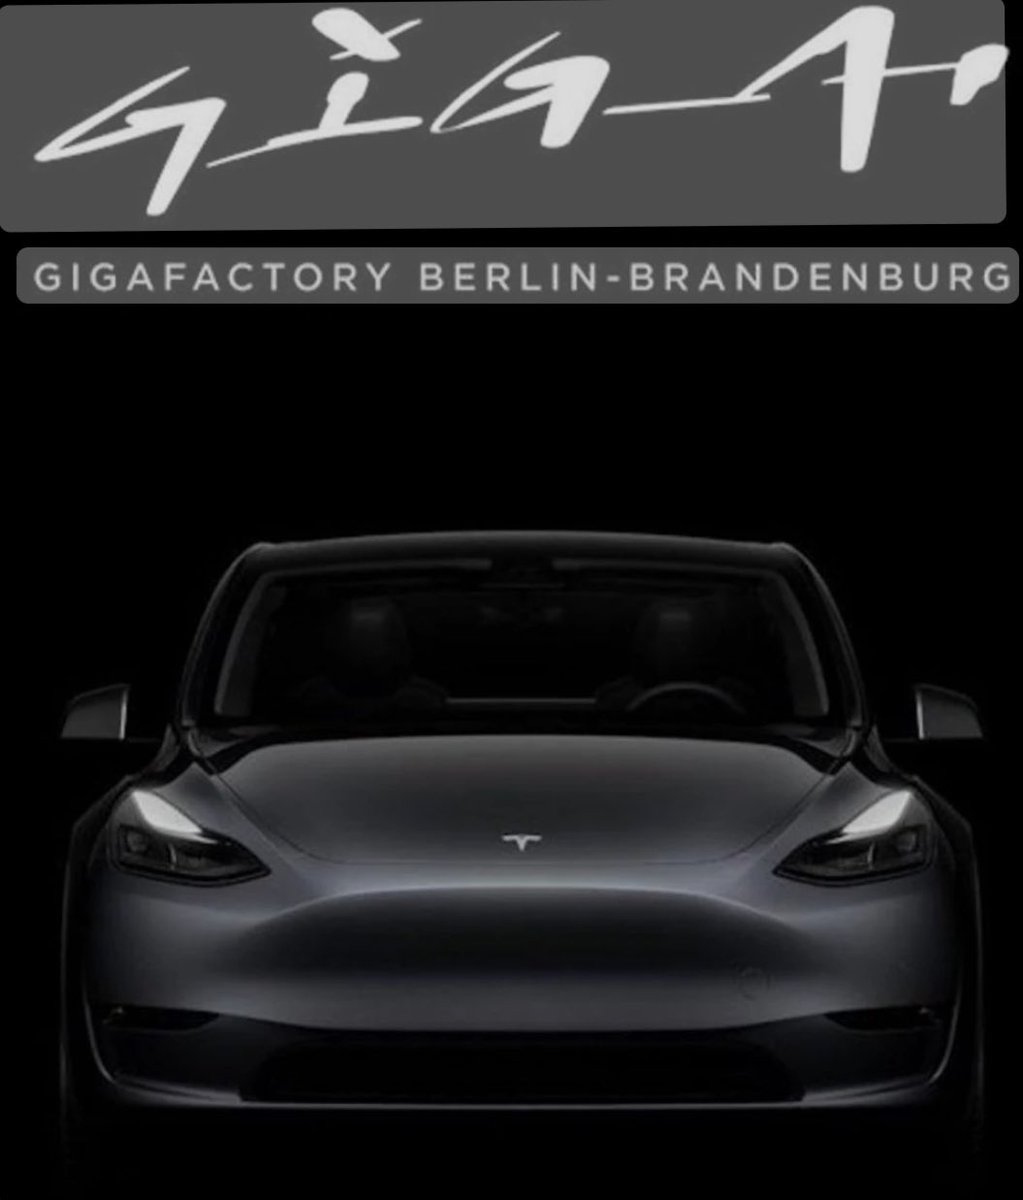 Es wurde entschieden: 
Die Tesla Fabrik GIGA Berlin wird weiter ausgebaut!
Es ist wie im Märchen:
„Das Gute gewinnt immer 🏆“ 🎉🎉🎉

#tesla #sexycars #highland #plaid #ludicrous #performance #Model3 #models #modelx #modely #cybertruck #teslavibes #giga #gigaberlin